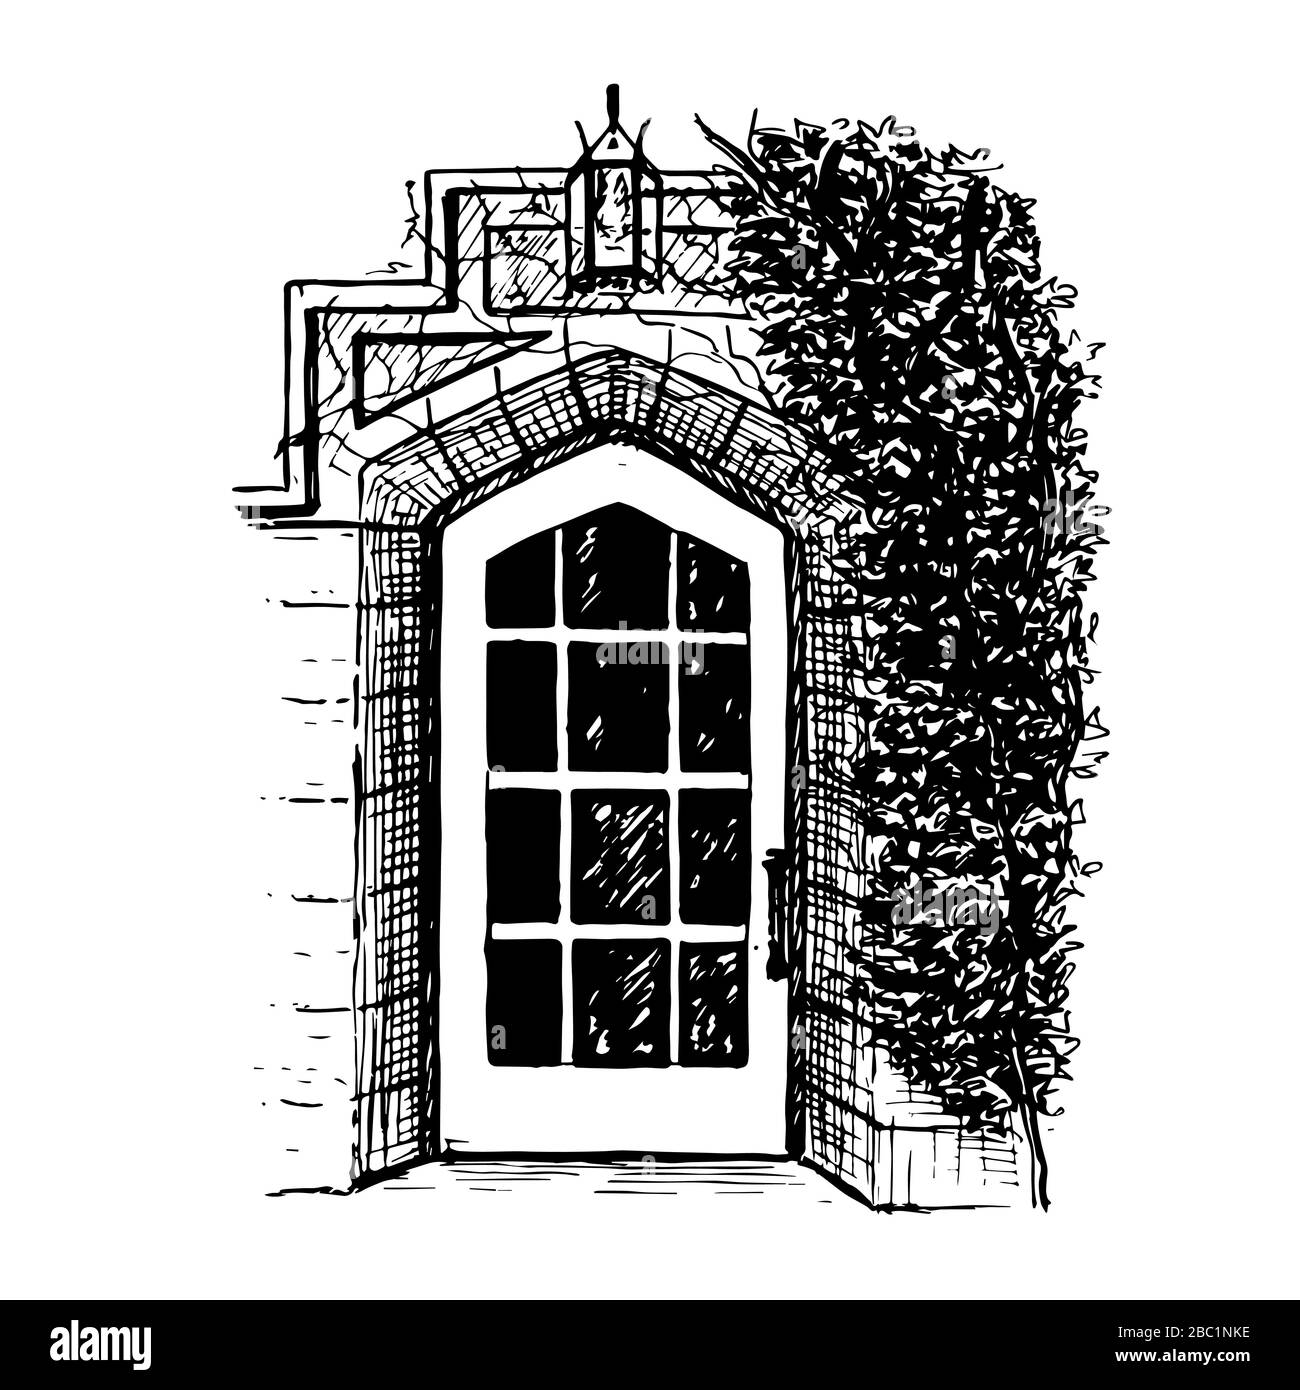 Una porta ad arco in stile francese in stile vintage con una silhouette a tempo. Lampada, albero, muro in mattoni. Illustrazione disegnata a mano. Penna a inchiostro Illustrazione Vettoriale